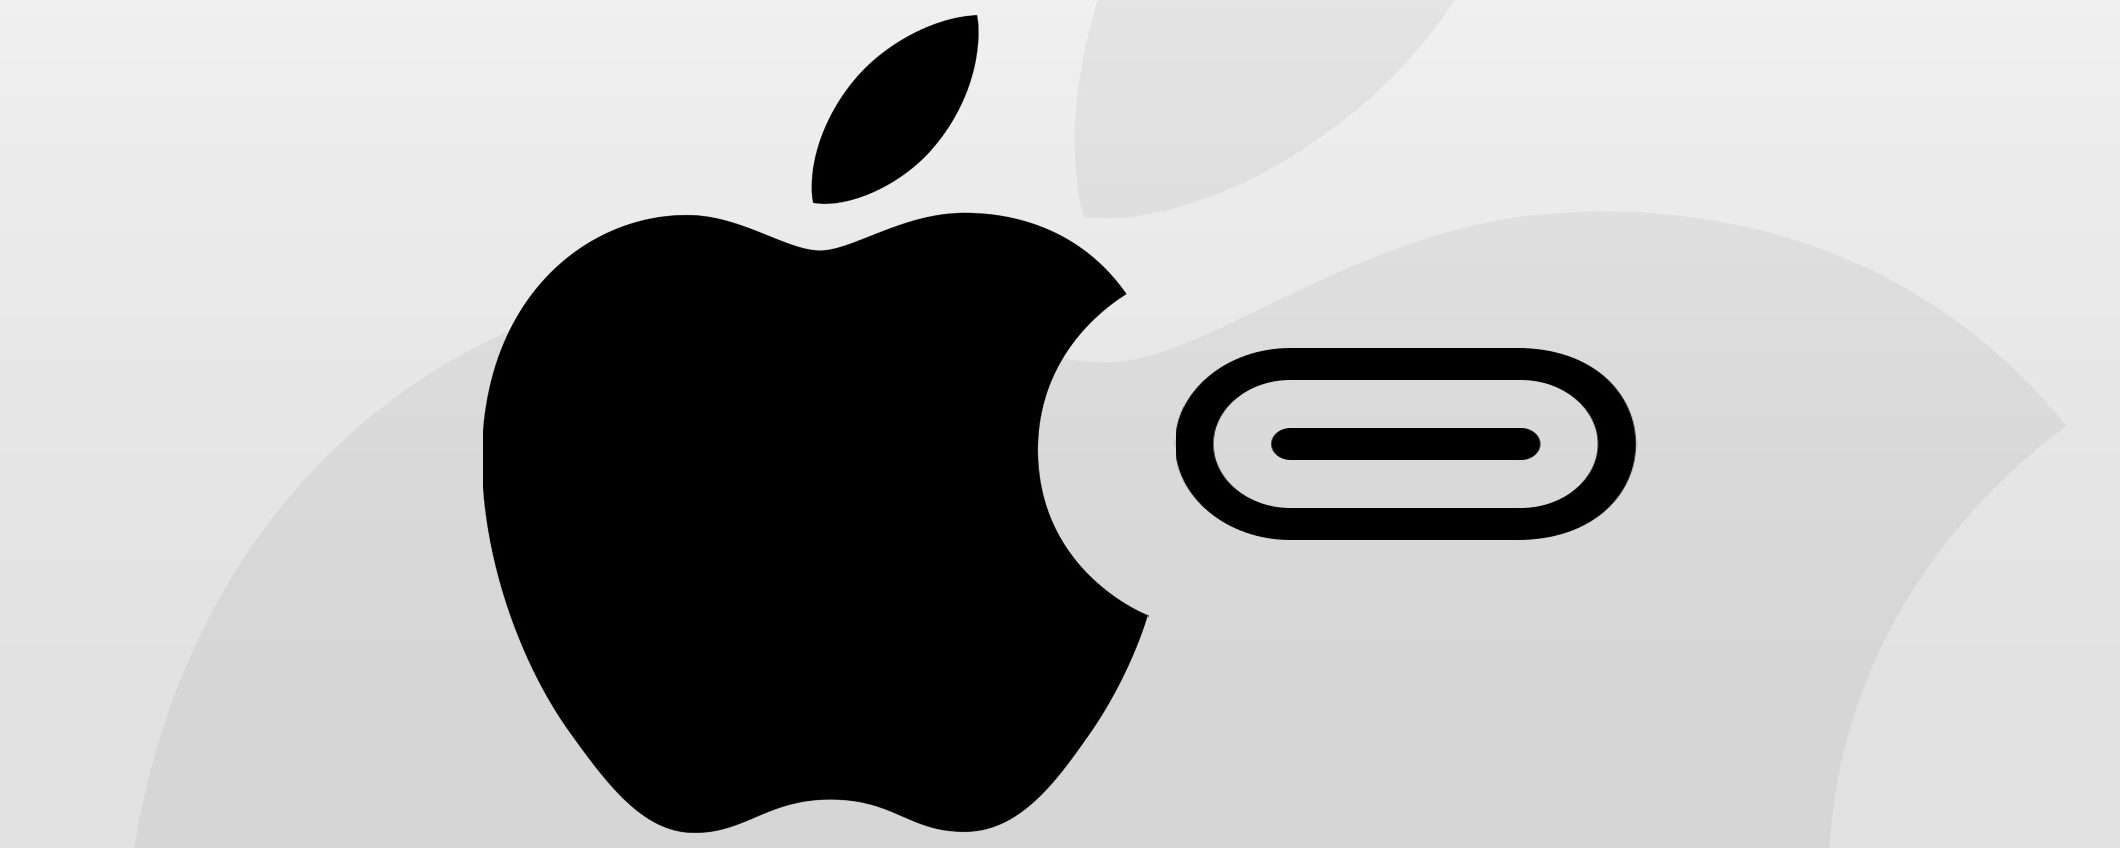 iPhone USB-C è ufficiale (ma Apple non è contenta)